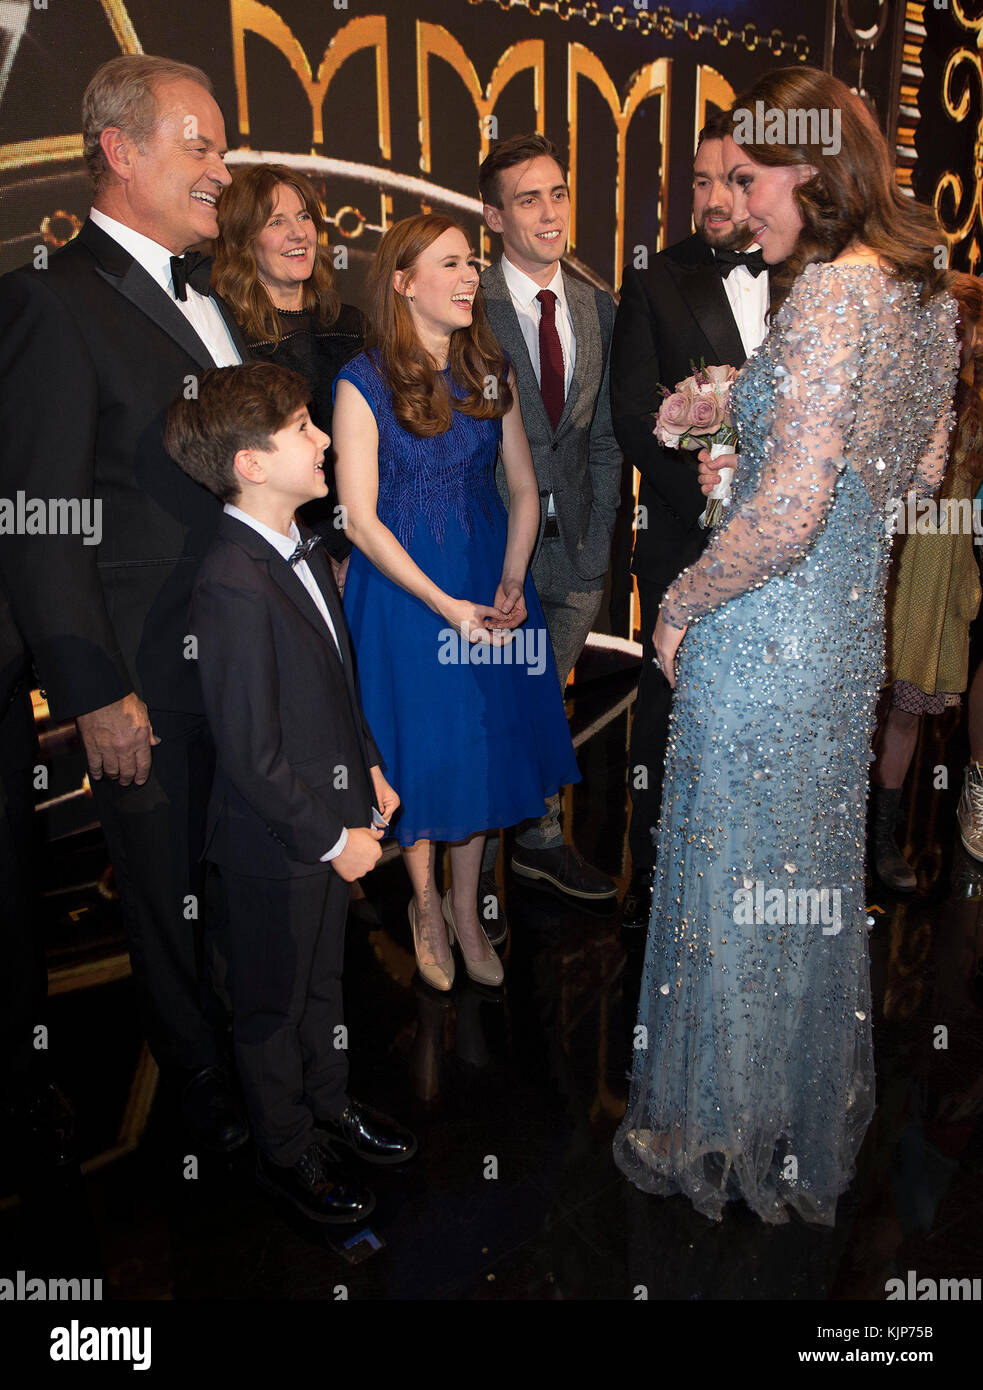 La duchesse de Cambridge rencontre Kelsey Grammer (à gauche) sur scène à la Royal Variety Performance au London Palladium dans le centre de Londres. Banque D'Images